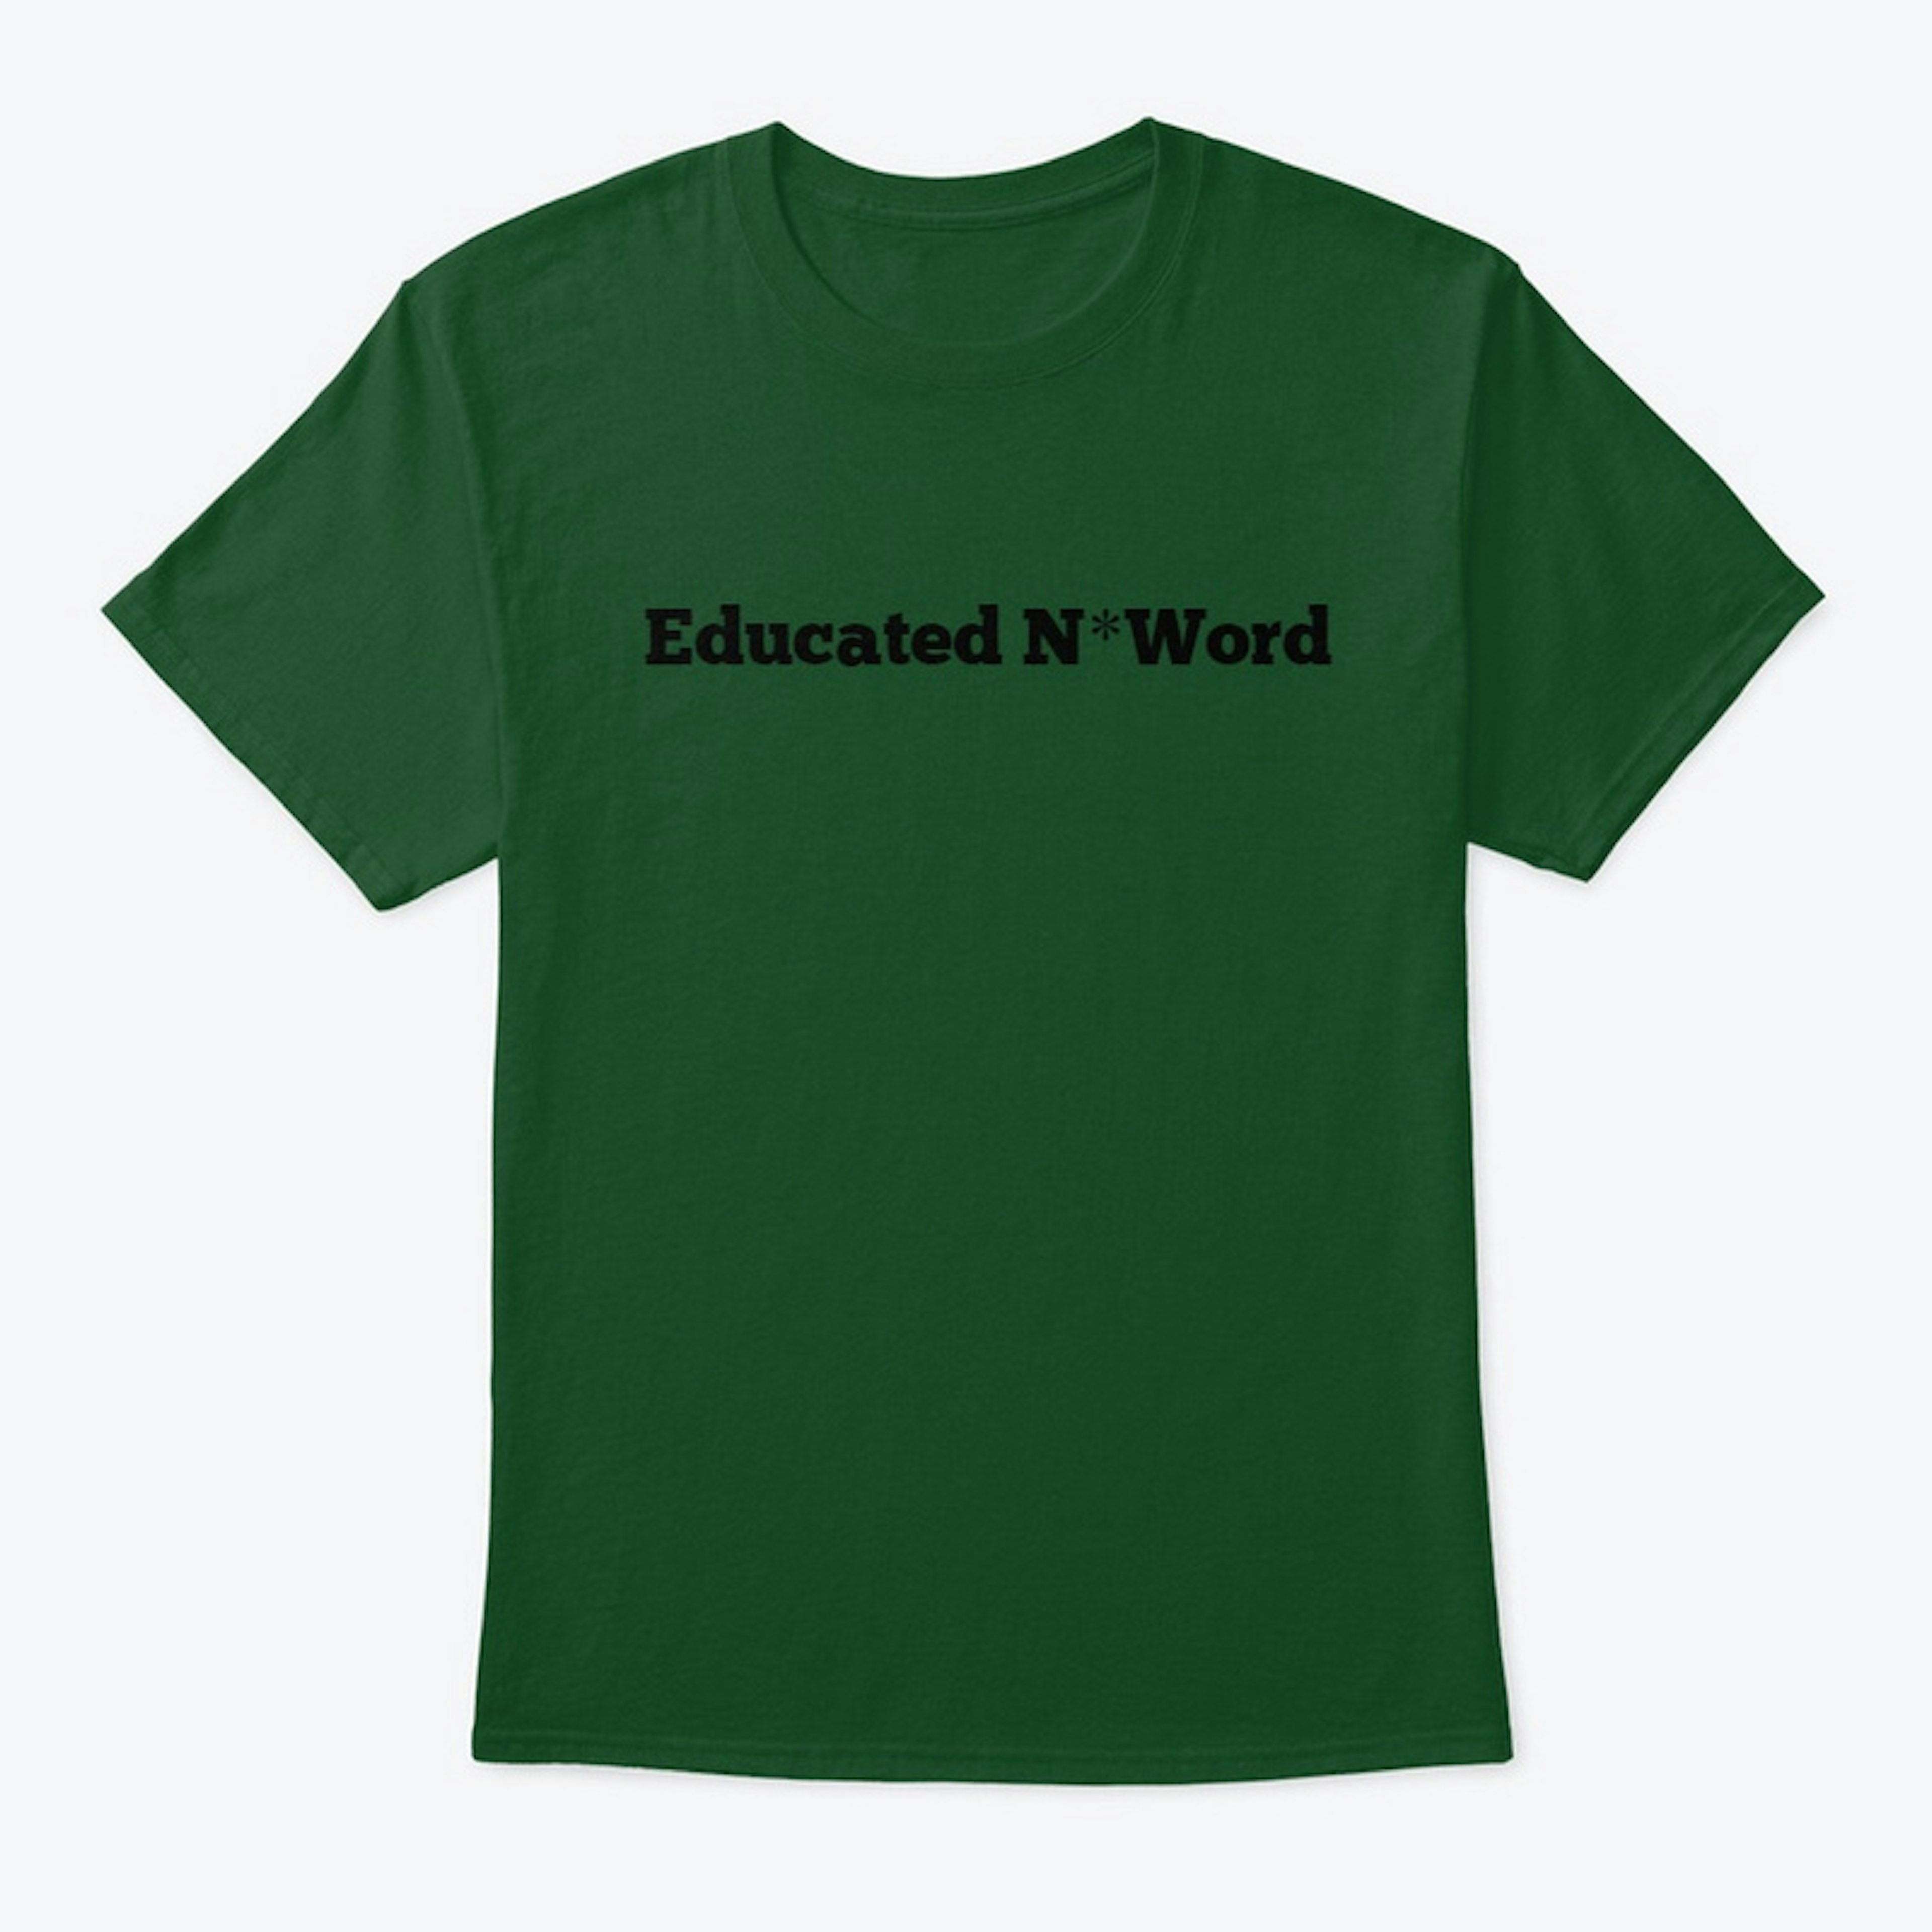 Educated N*Word